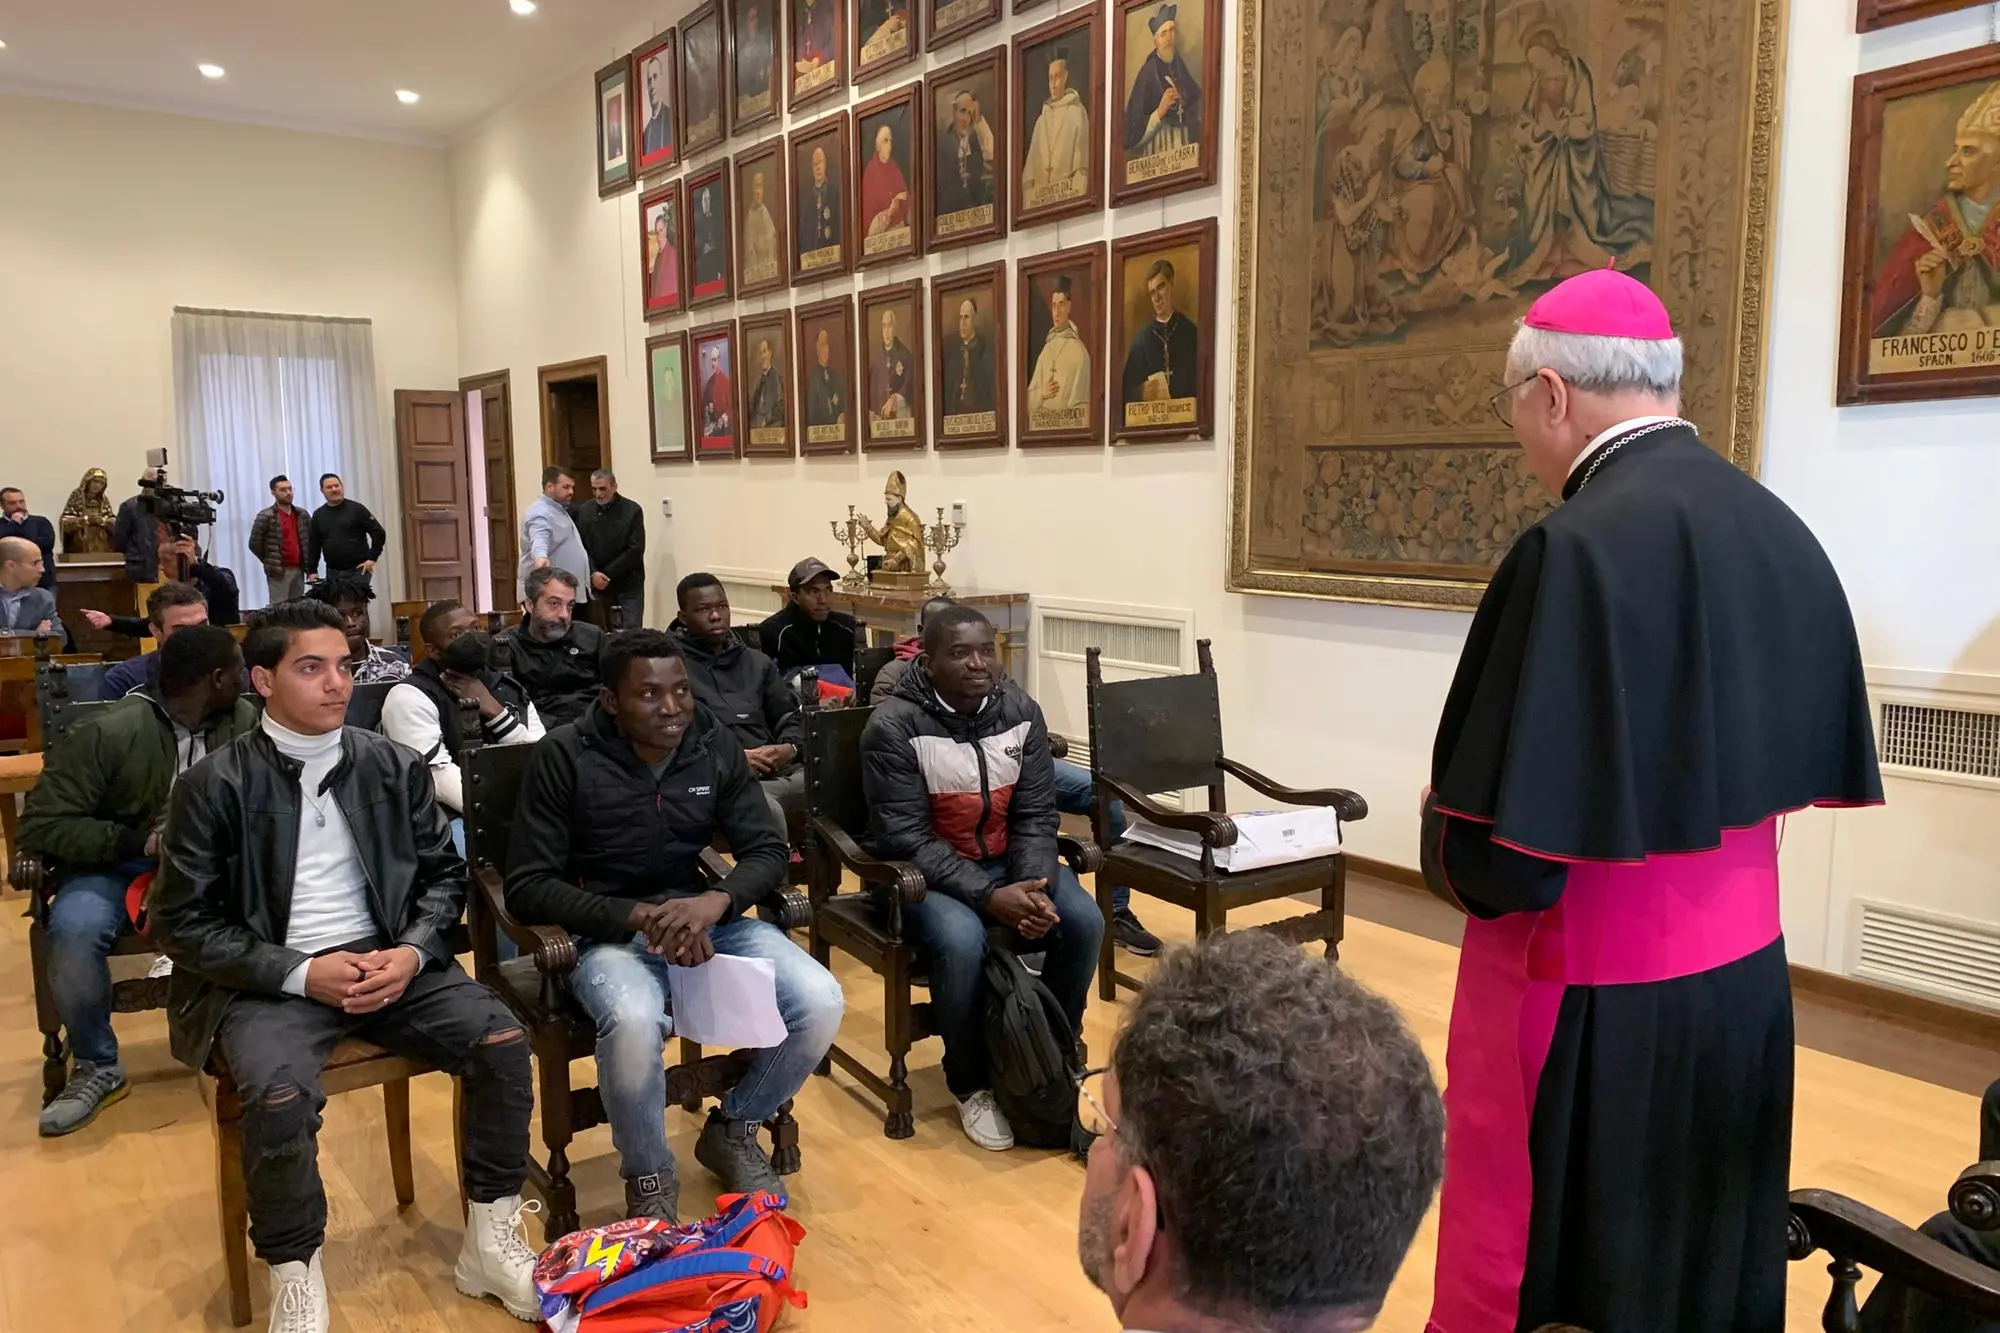 L'incontro in episcopio tra l'arcivescovo di Cagliari monsignor Giuseppe Baturi e i rappresentanti delle comunità straniere presenti in città (foto Artizzu)